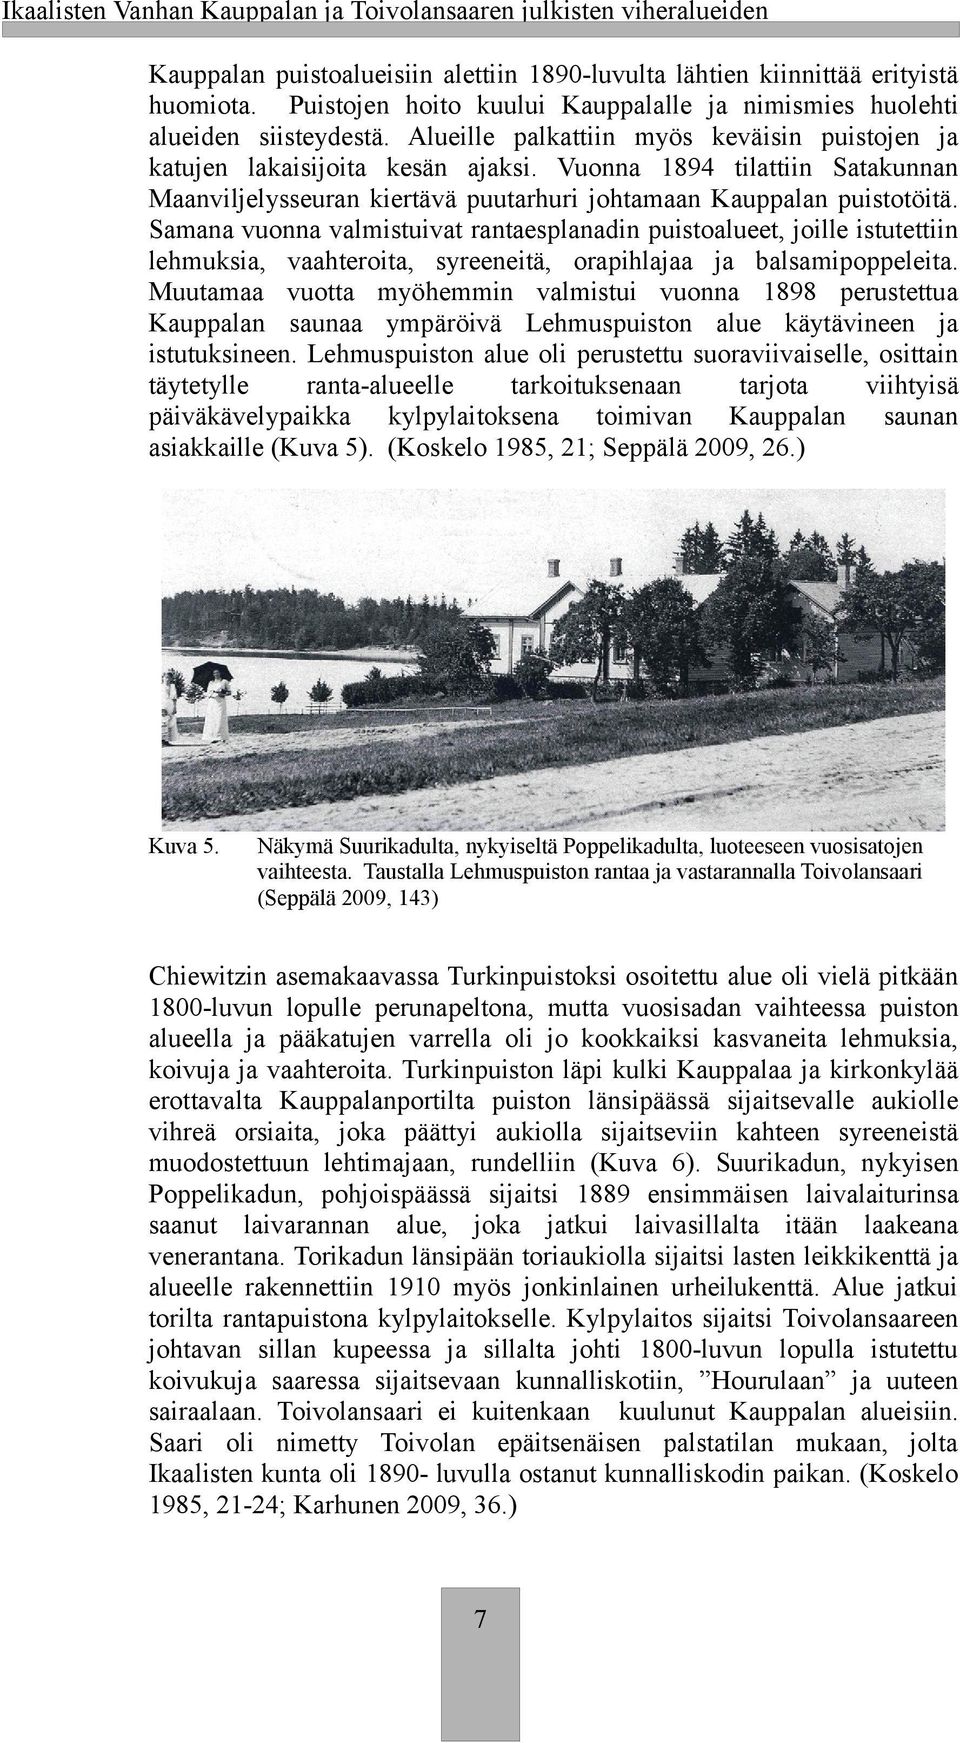 Vuonna 1894 tilattiin Sataunnan Maanviljelysseuran iertävä puutarhuri johtamaan Kauppalan puistotöitä.